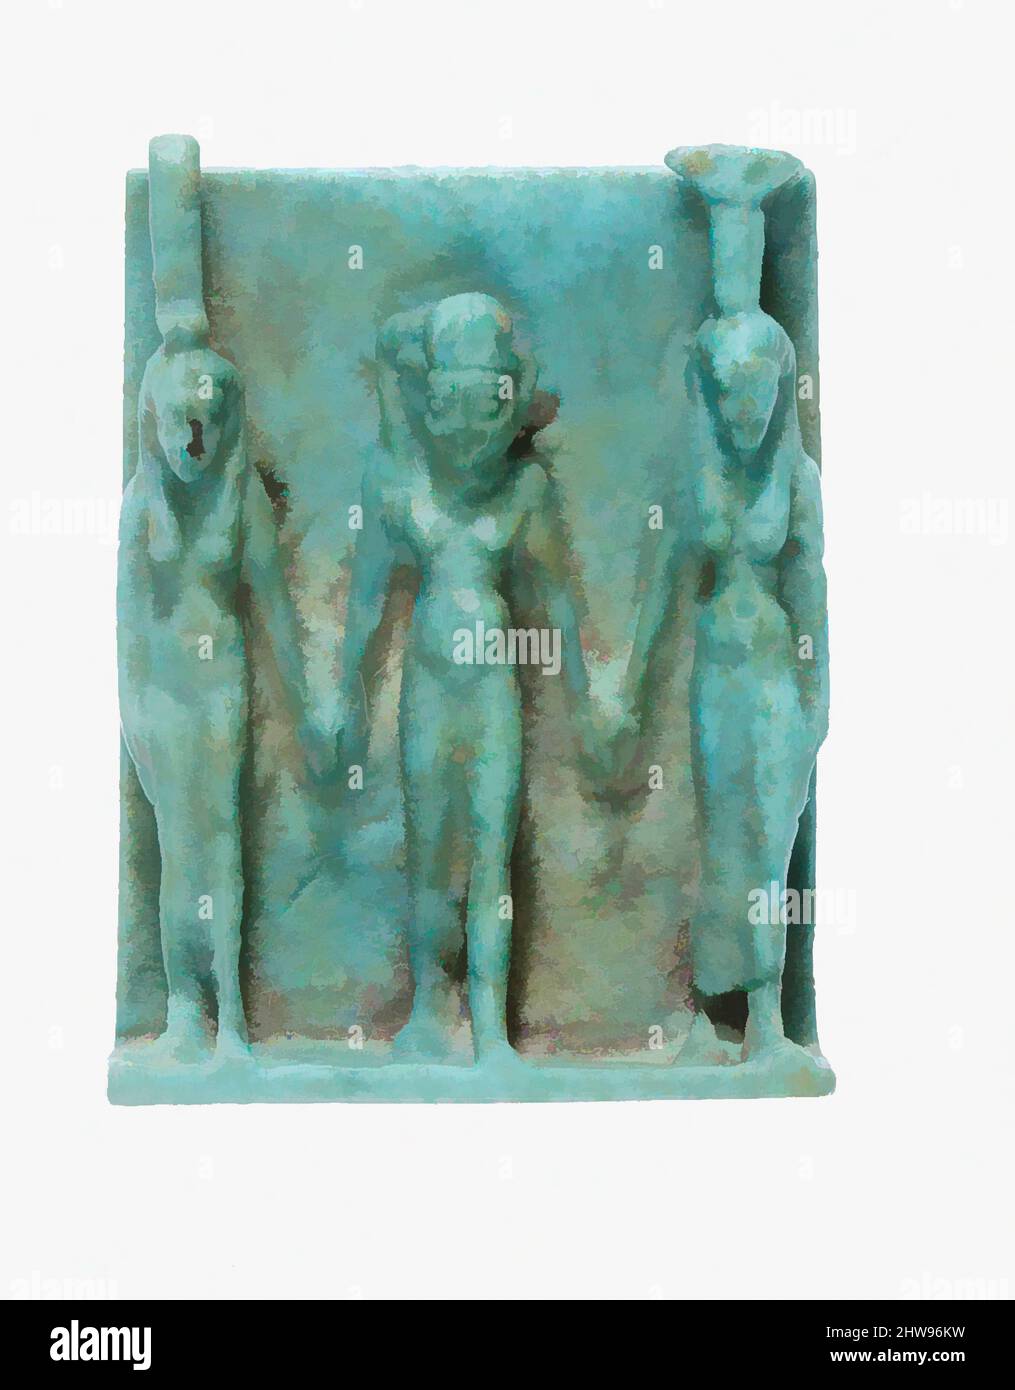 Kunst inspiriert von Amulett Darstellung Nephthys, Horus und Isis, späte Periode–ptolemäische Periode, 664–30 v. Chr., Aus Ägypten, Faience, H. 3 cm (1 3/16 in.); W. 2,3 cm (7/8 in.); D. 1 cm (3/8 in.), die drei Gottheiten in diesem Triad Amulett dargestellt sind einige der wichtigsten Protagonisten in der Osiride, Classic Works modernisiert von Artotop mit einem Schuss Moderne. Formen, Farbe und Wert, auffällige visuelle Wirkung auf Kunst. Emotionen durch Freiheit von Kunstwerken auf zeitgemäße Weise. Eine zeitlose Botschaft, die eine wild kreative neue Richtung verfolgt. Künstler, die sich dem digitalen Medium zuwenden und die Artotop NFT erschaffen Stockfoto